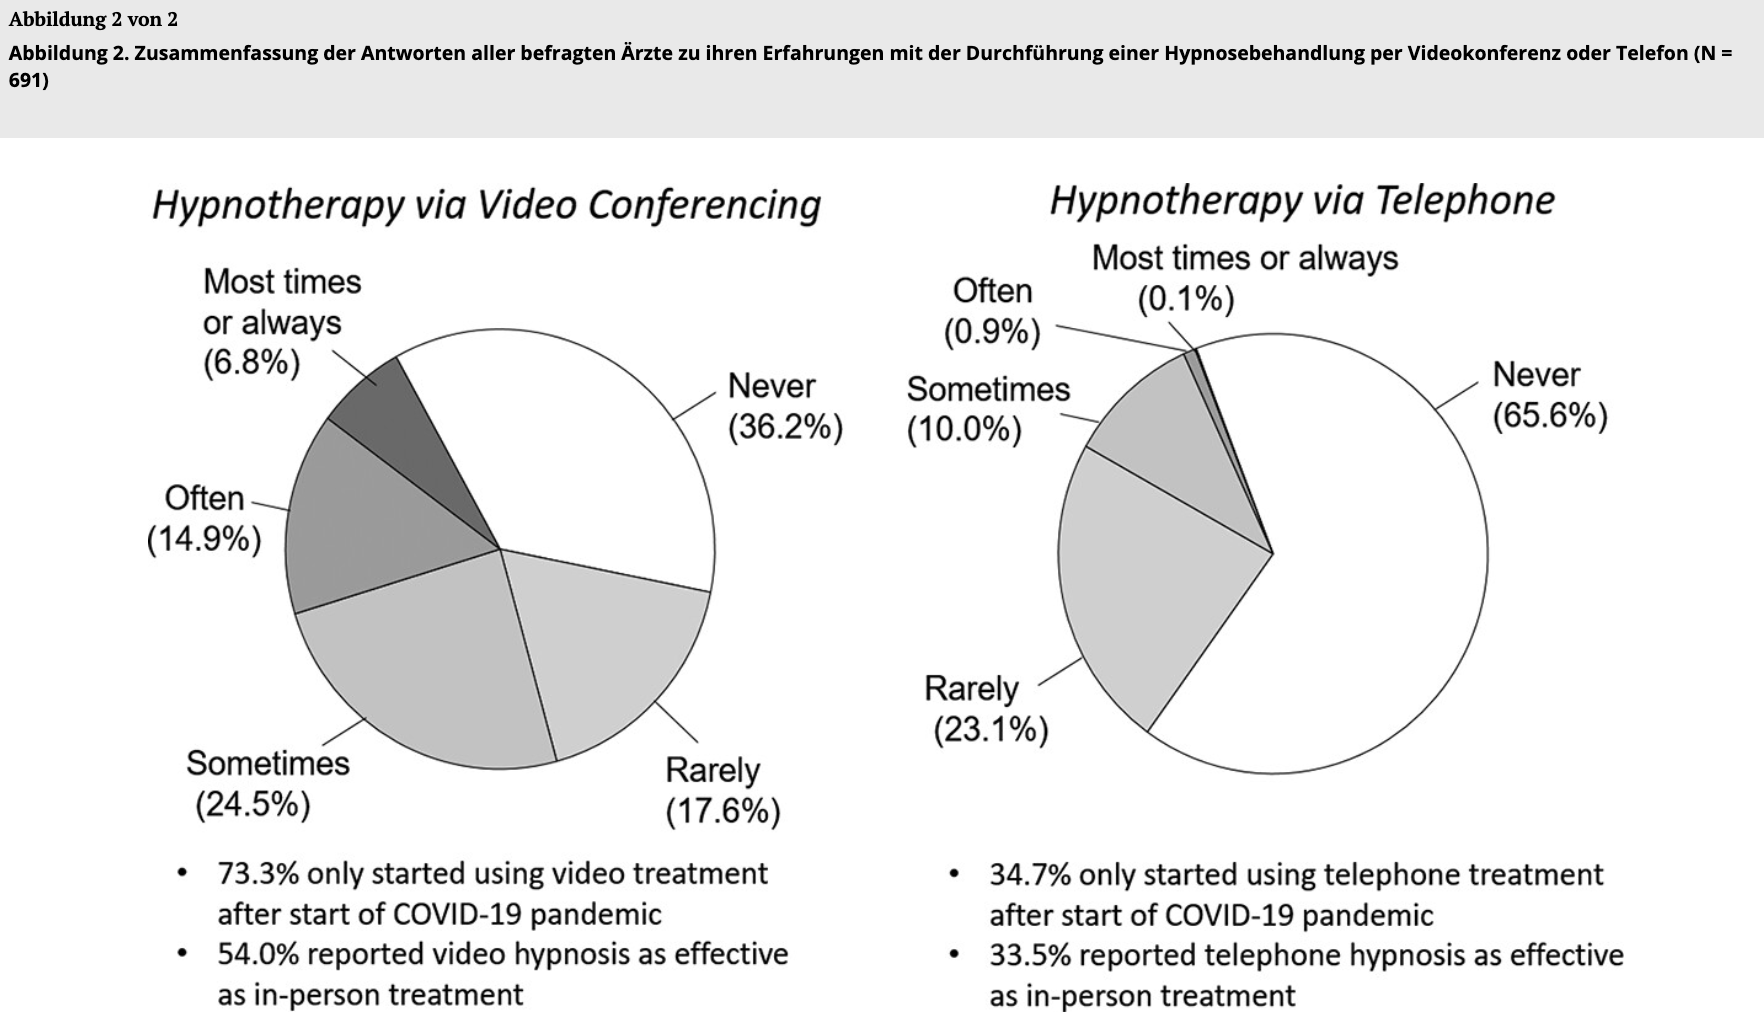 Abbildung 2. Zusammenfassung der Antworten aller befragten Ärzte zu ihren Erfahrungen mit der Durchführung einer Hypnosebehandlung per Videokonferenz oder Telefon (N = 691)